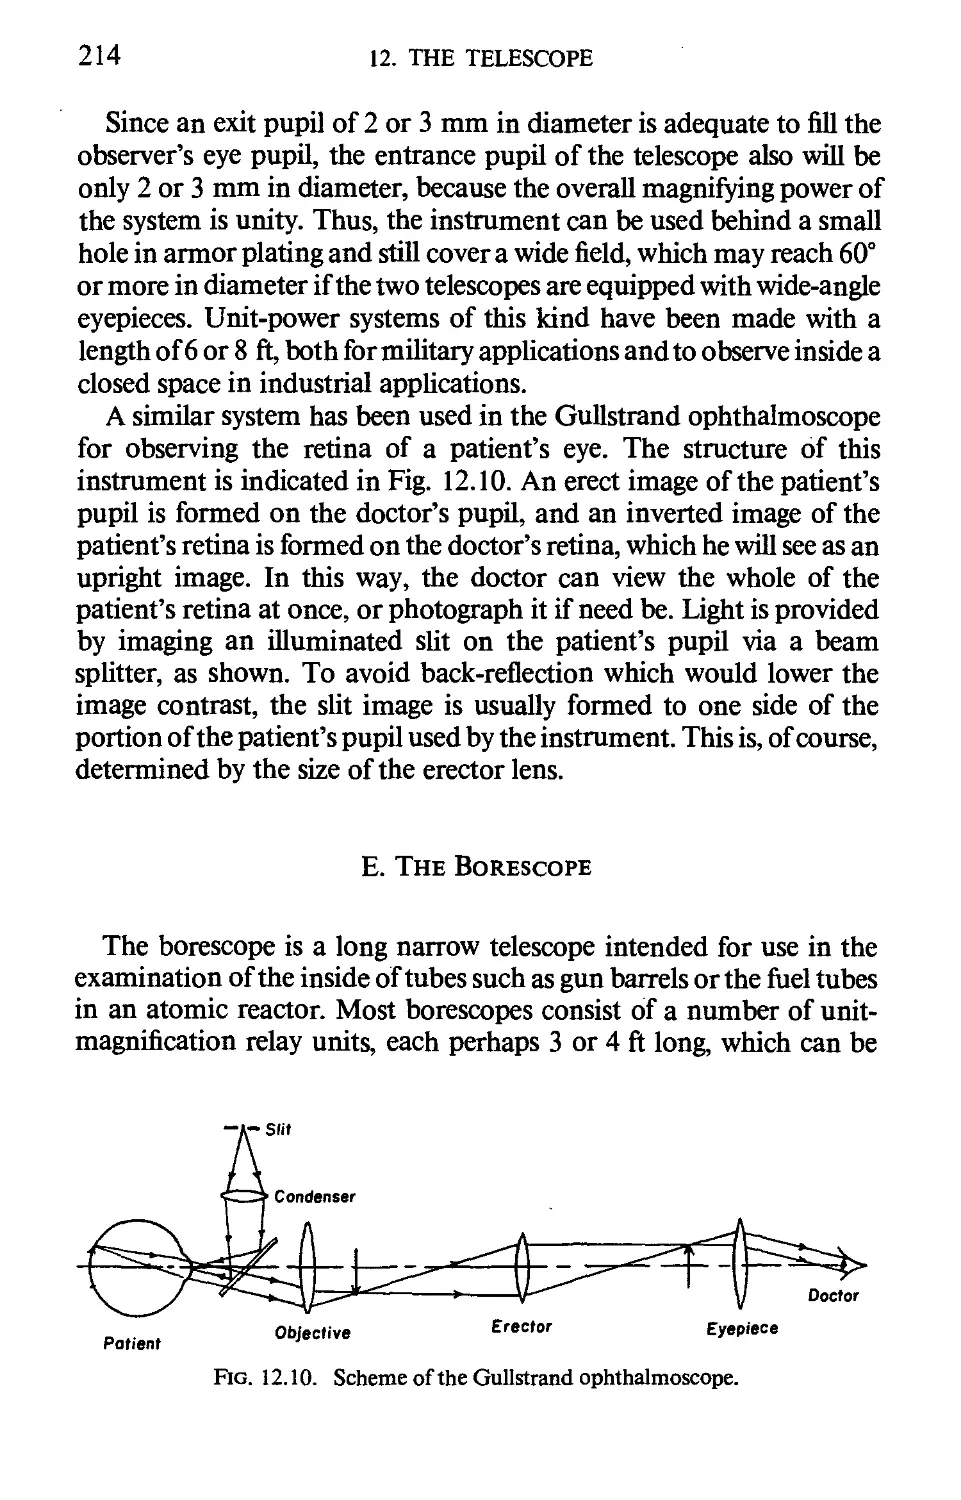 E. The Borescope